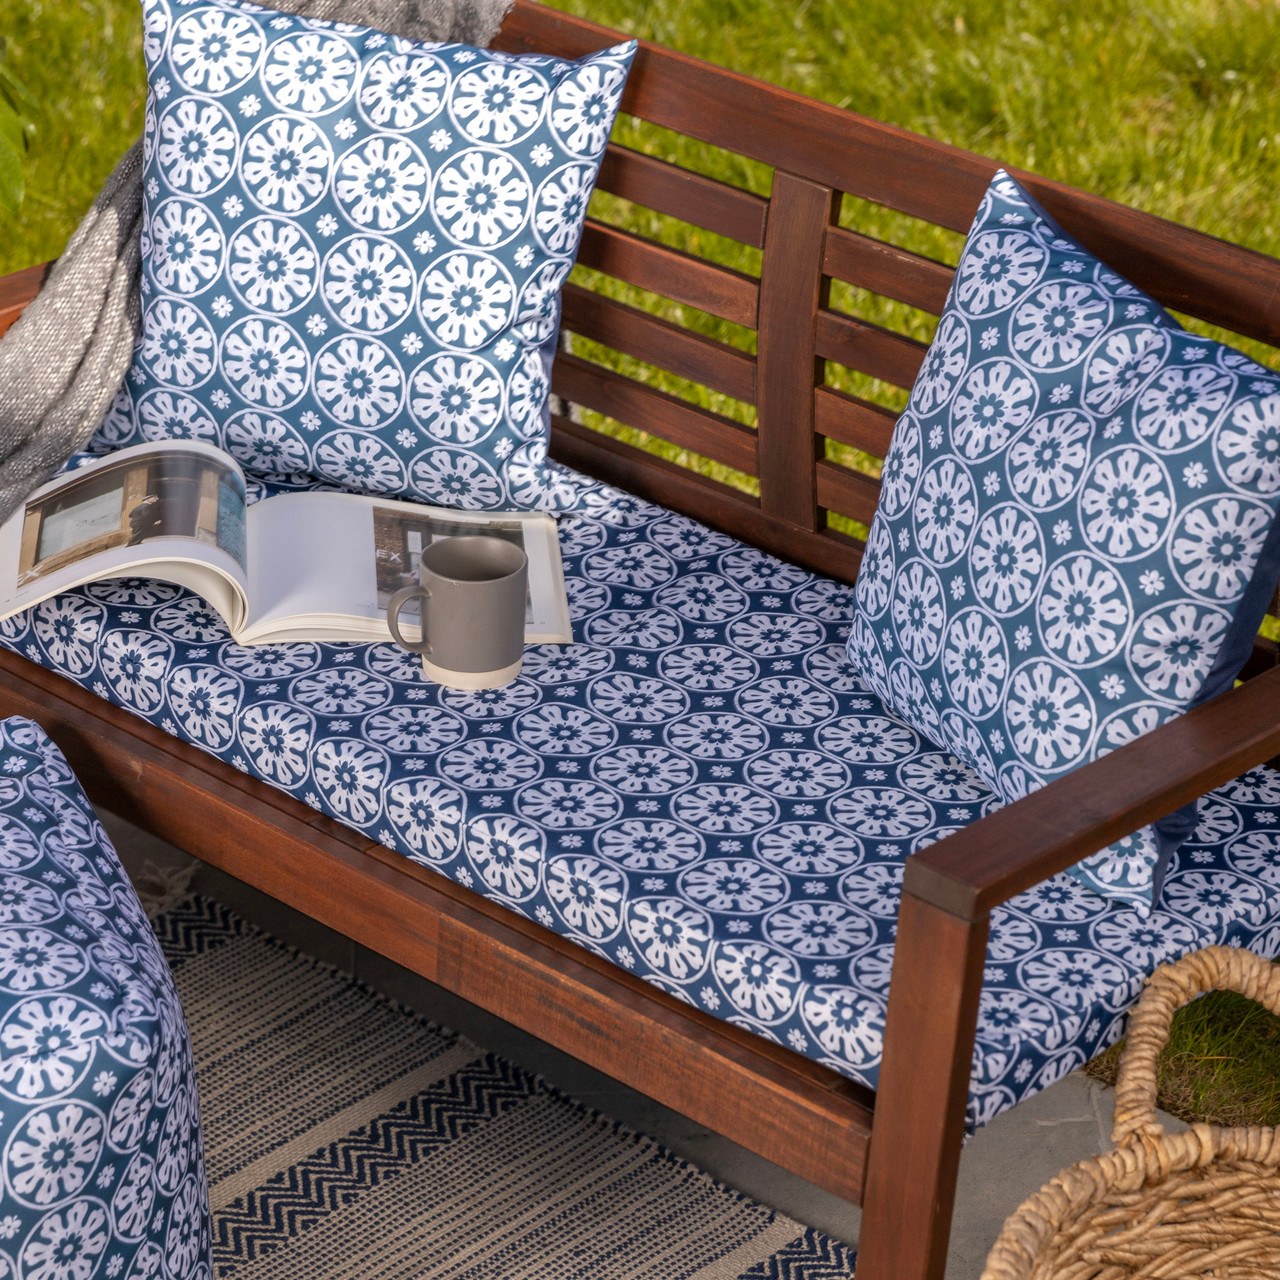 Outdoor Waterproof Fabric 2 3 4 Seater Bench Pad Garden